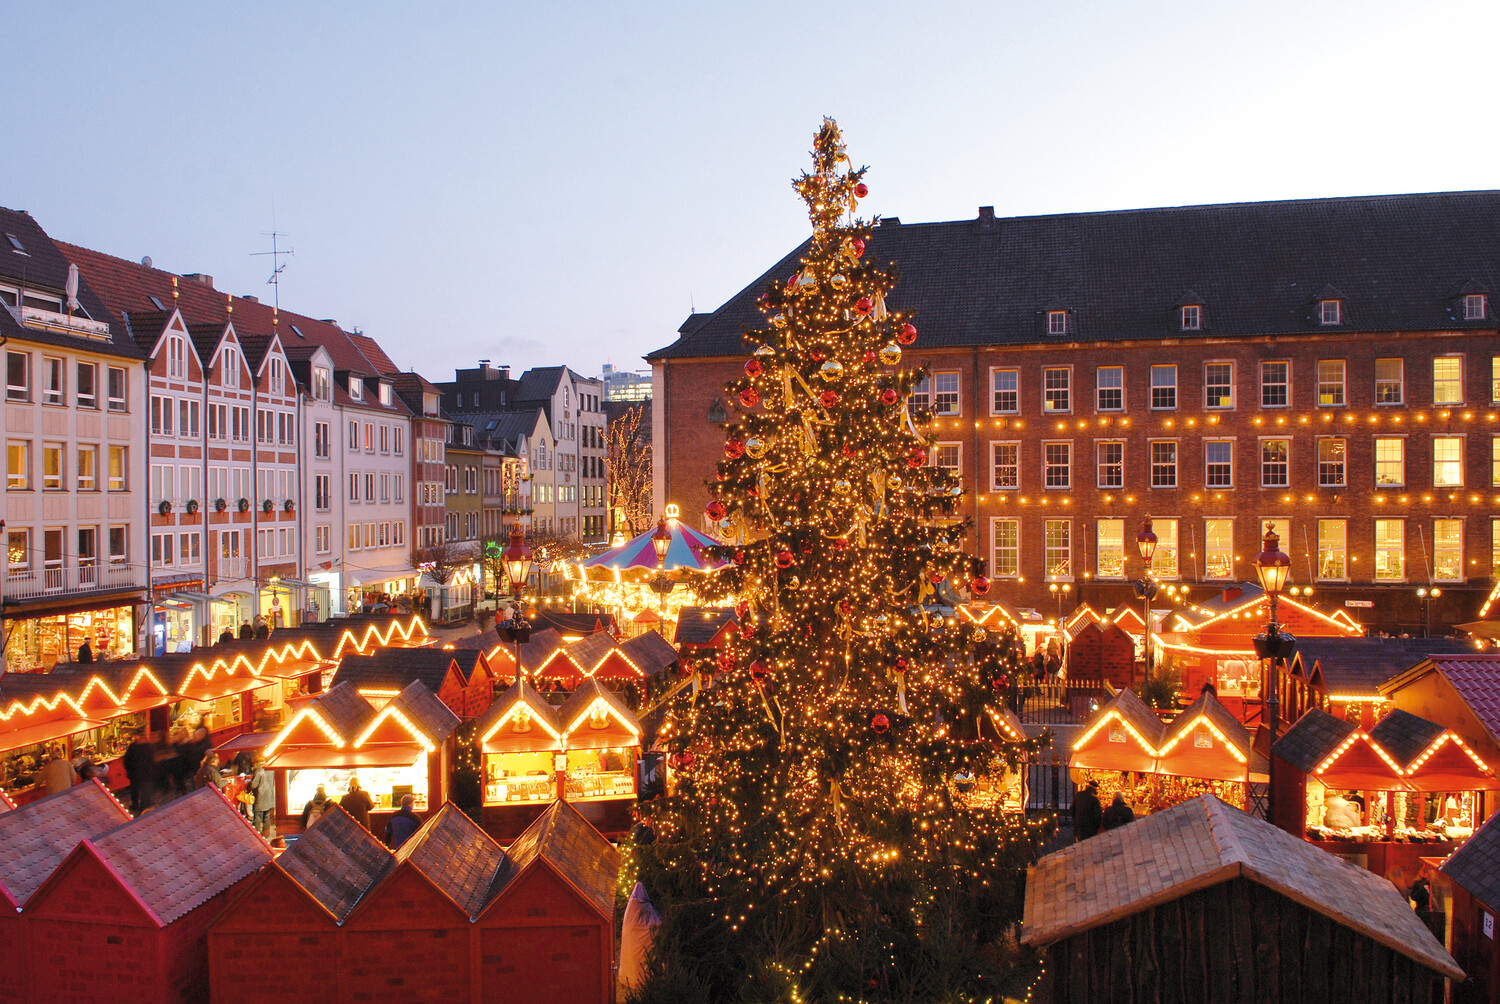 Blick auf den Marktplatz in Düsseldorf und die Hütten des Handwerker-Markts. Alles ist festlich mit Lichtern geschmückt und erleuchtet und in der Mitte steht ein großer Weihnachtsbaum.